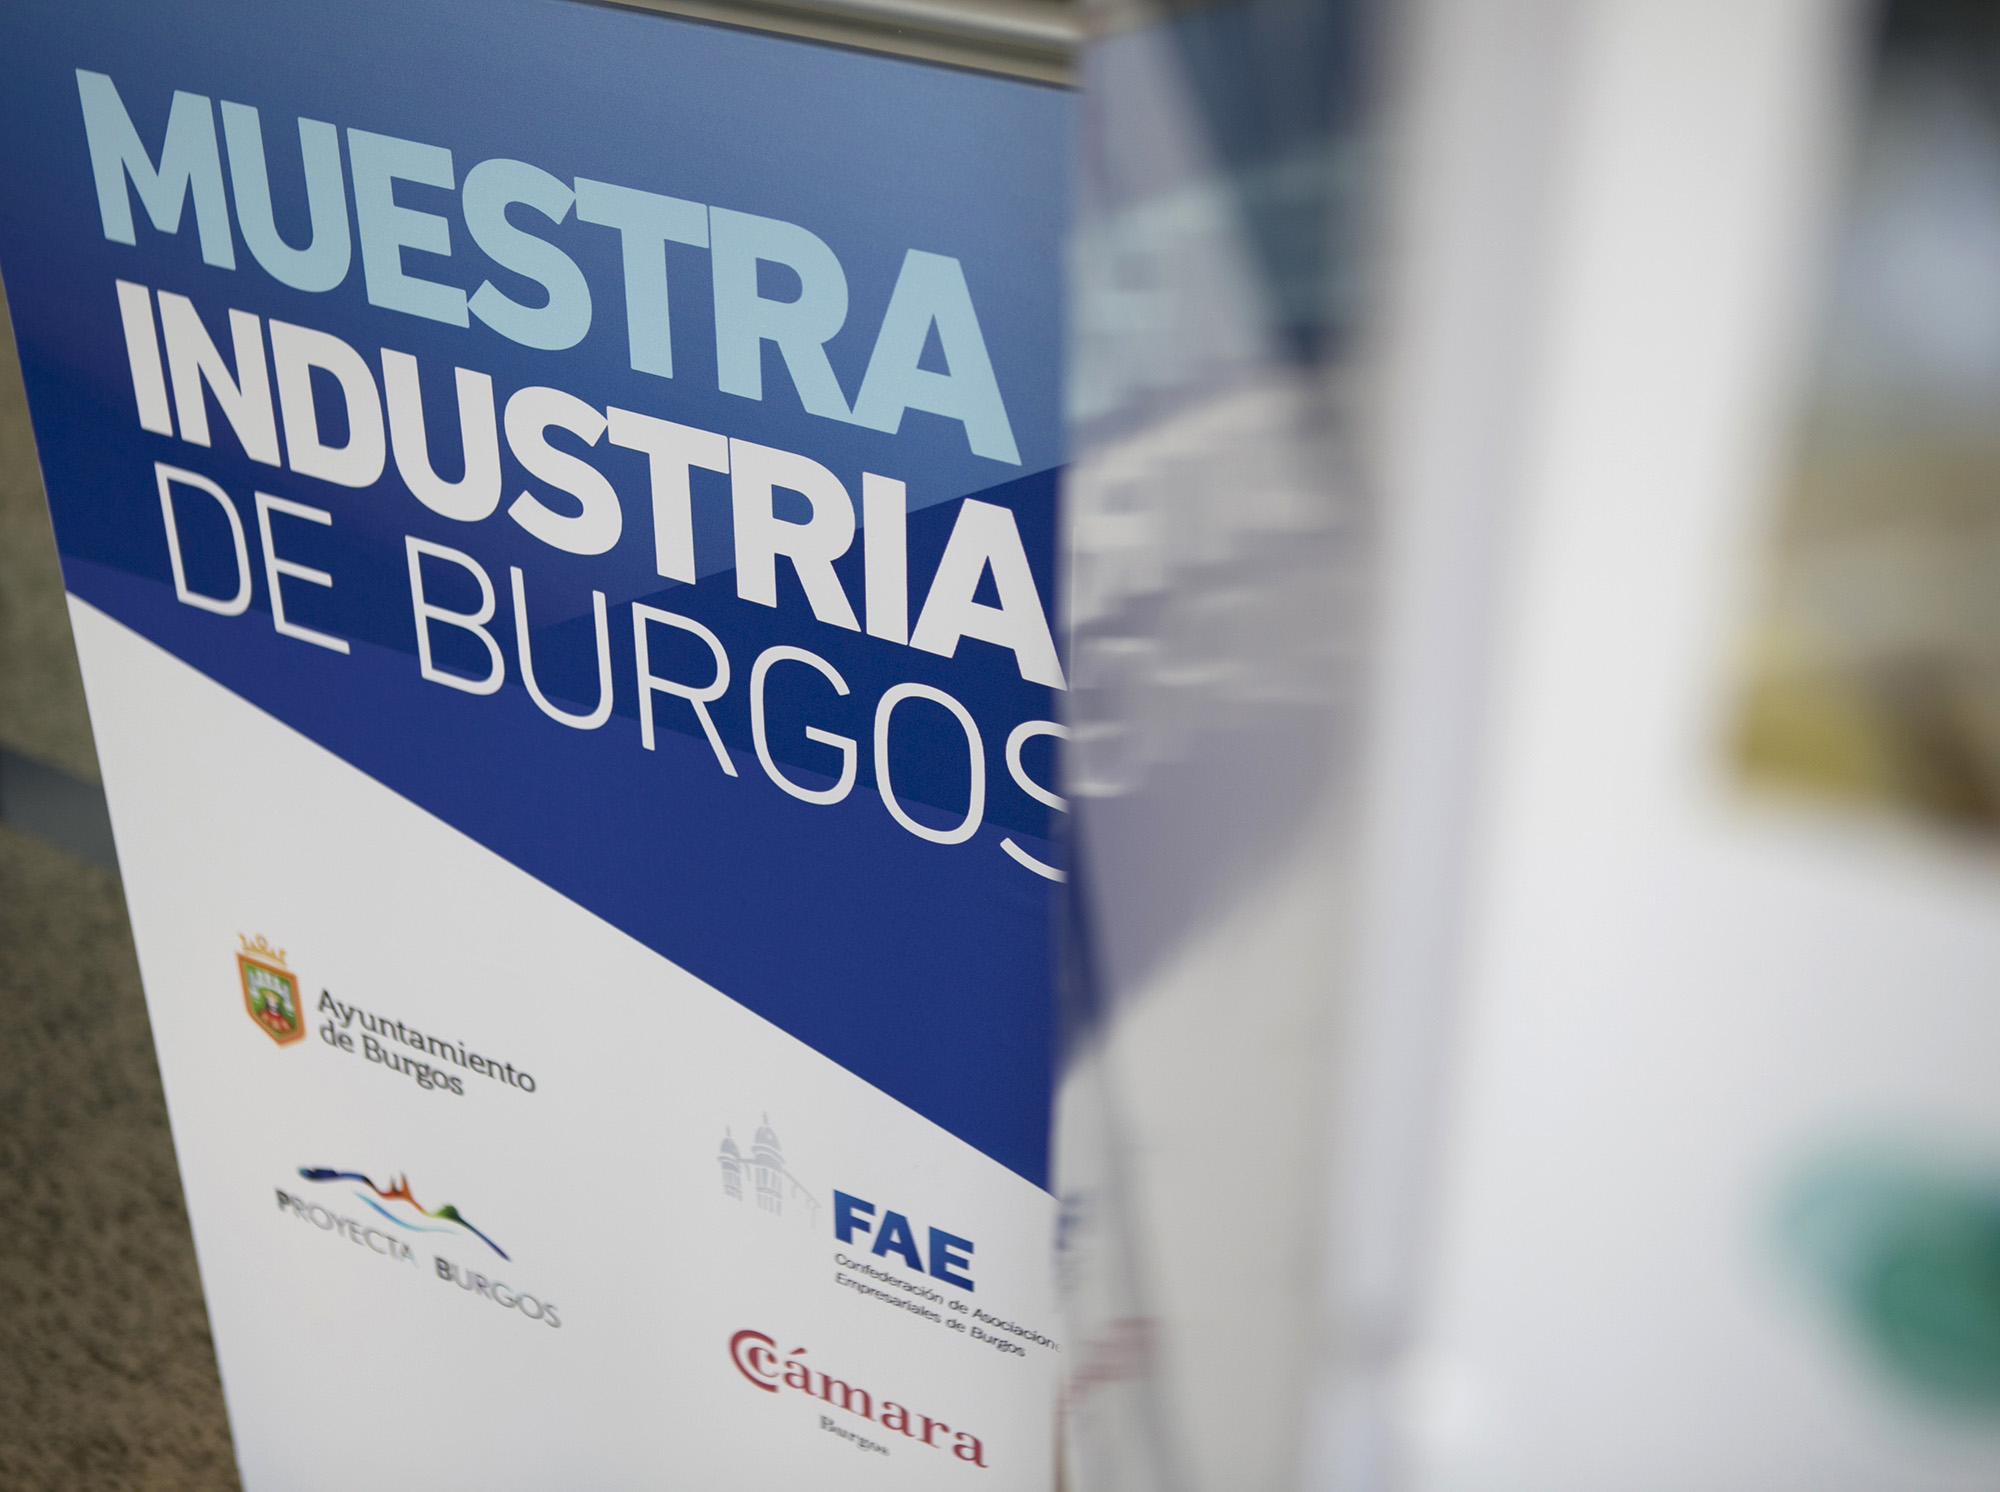 Exposición muestra industrial Burgos empresas alimentación automoción